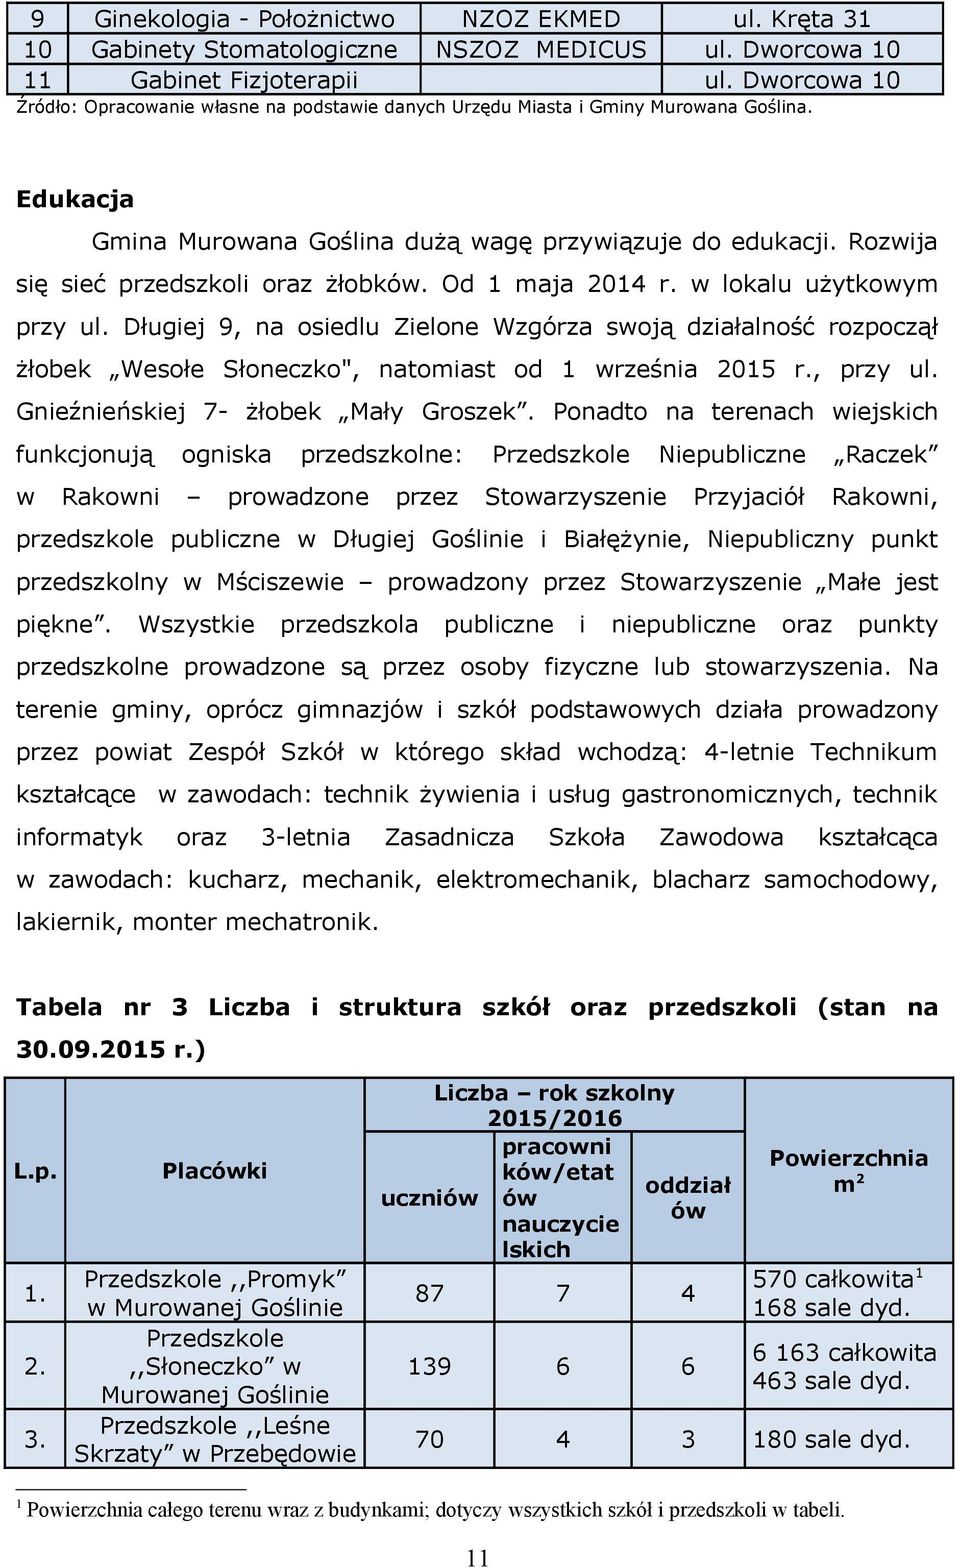 Od 1 maja 2014 r. lokalu użytkoym przy ul. Długiej 9, na osiedlu Zielone Wzgórza soją działalność rozpoczął żłobek Wesołe Słoneczko", natomiast od 1 rześnia 2015 r., przy ul.